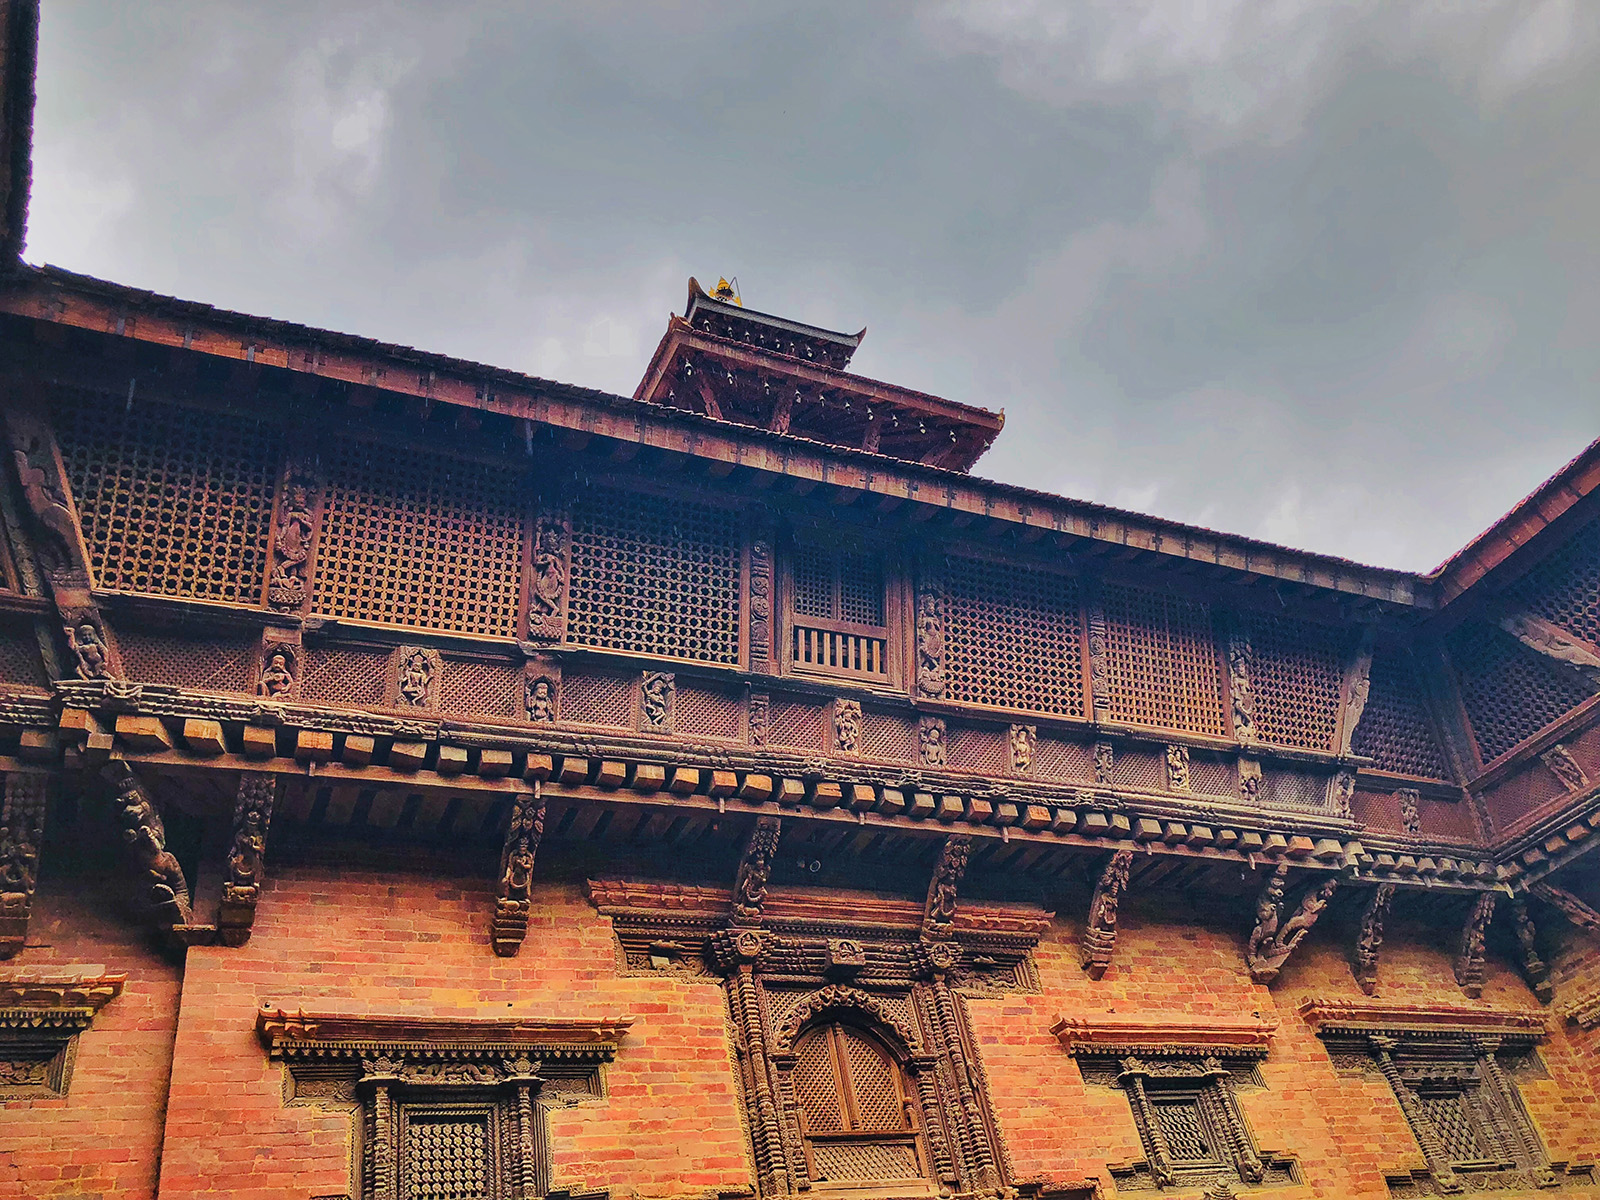 Kathmandu in Photos